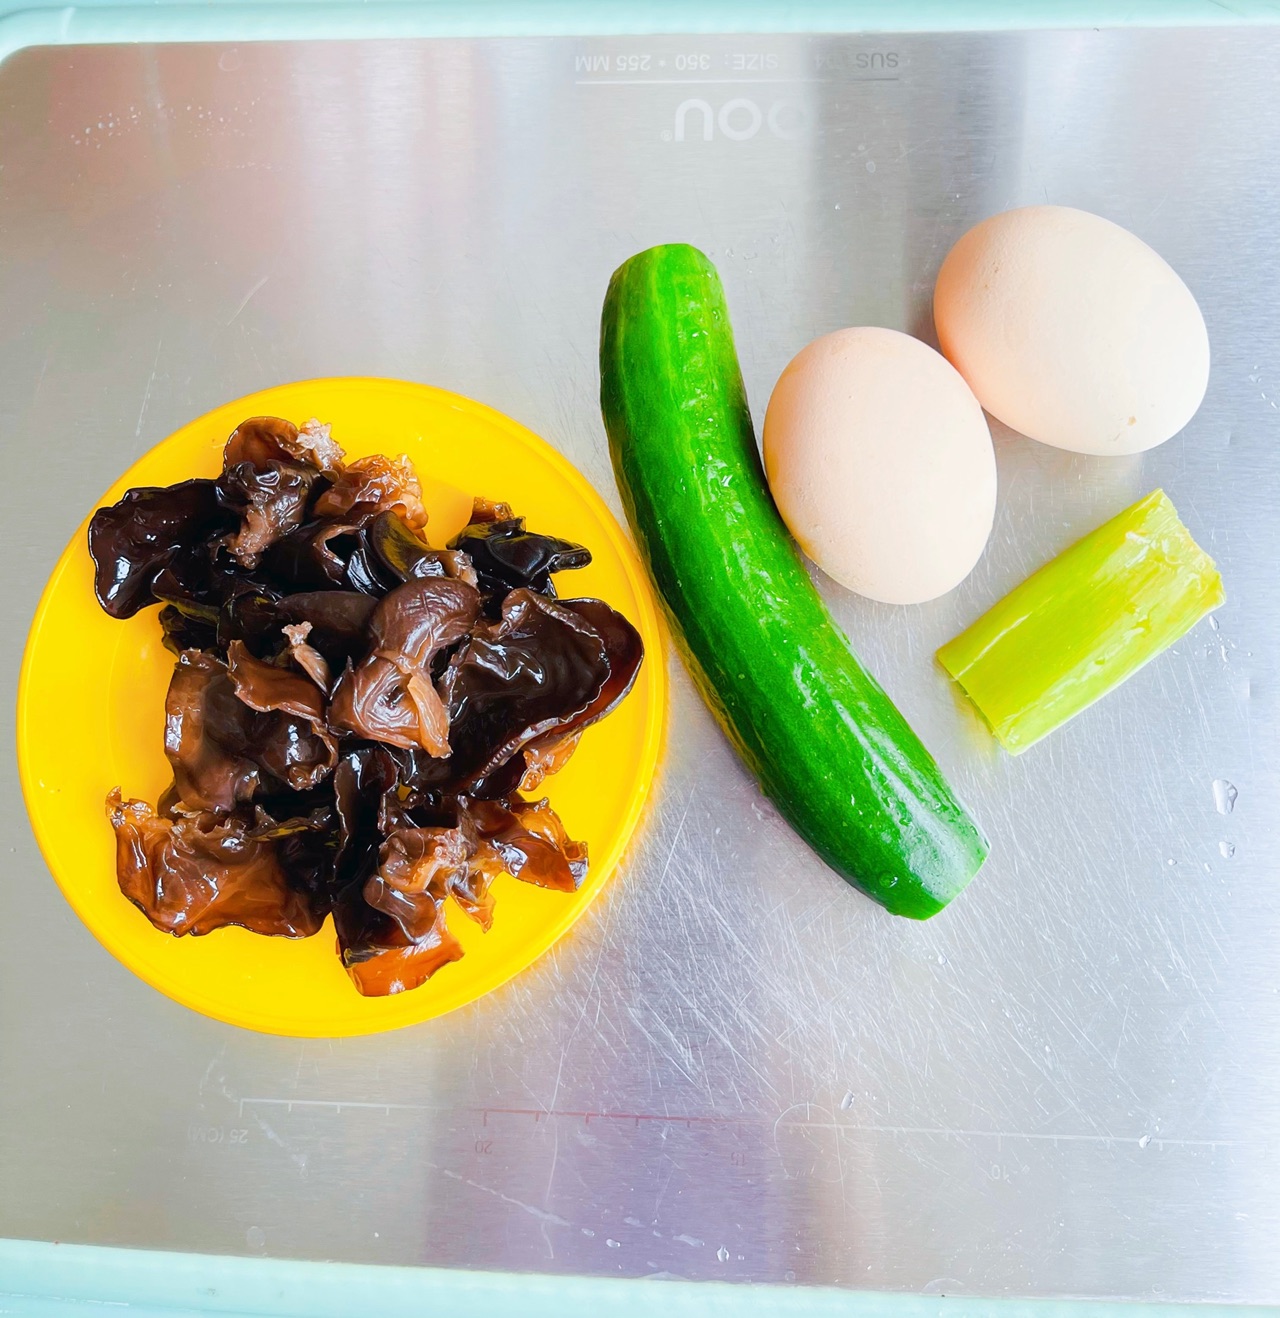 菠菜木耳炒鸡蛋,菠菜木耳炒鸡蛋的家常做法 - 美食杰菠菜木耳炒鸡蛋做法大全